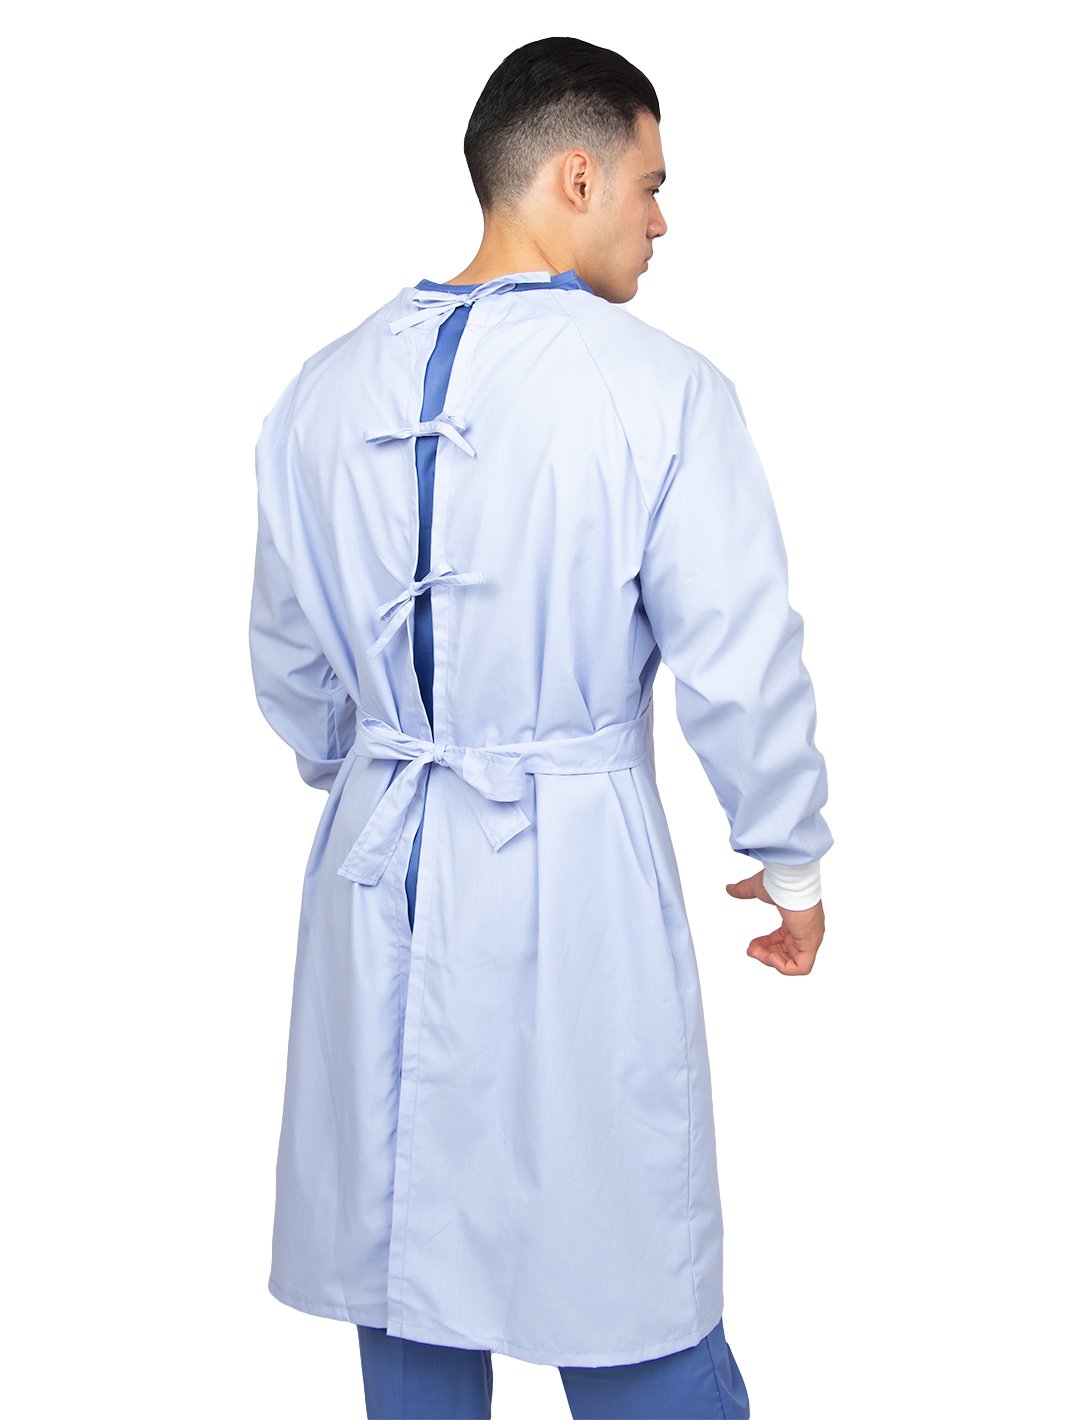 Hombre vistiendo bata para cirujano de tela reutilizable color turquesa con puños de cárdigan, cinto y listones de ajuste en la espalda